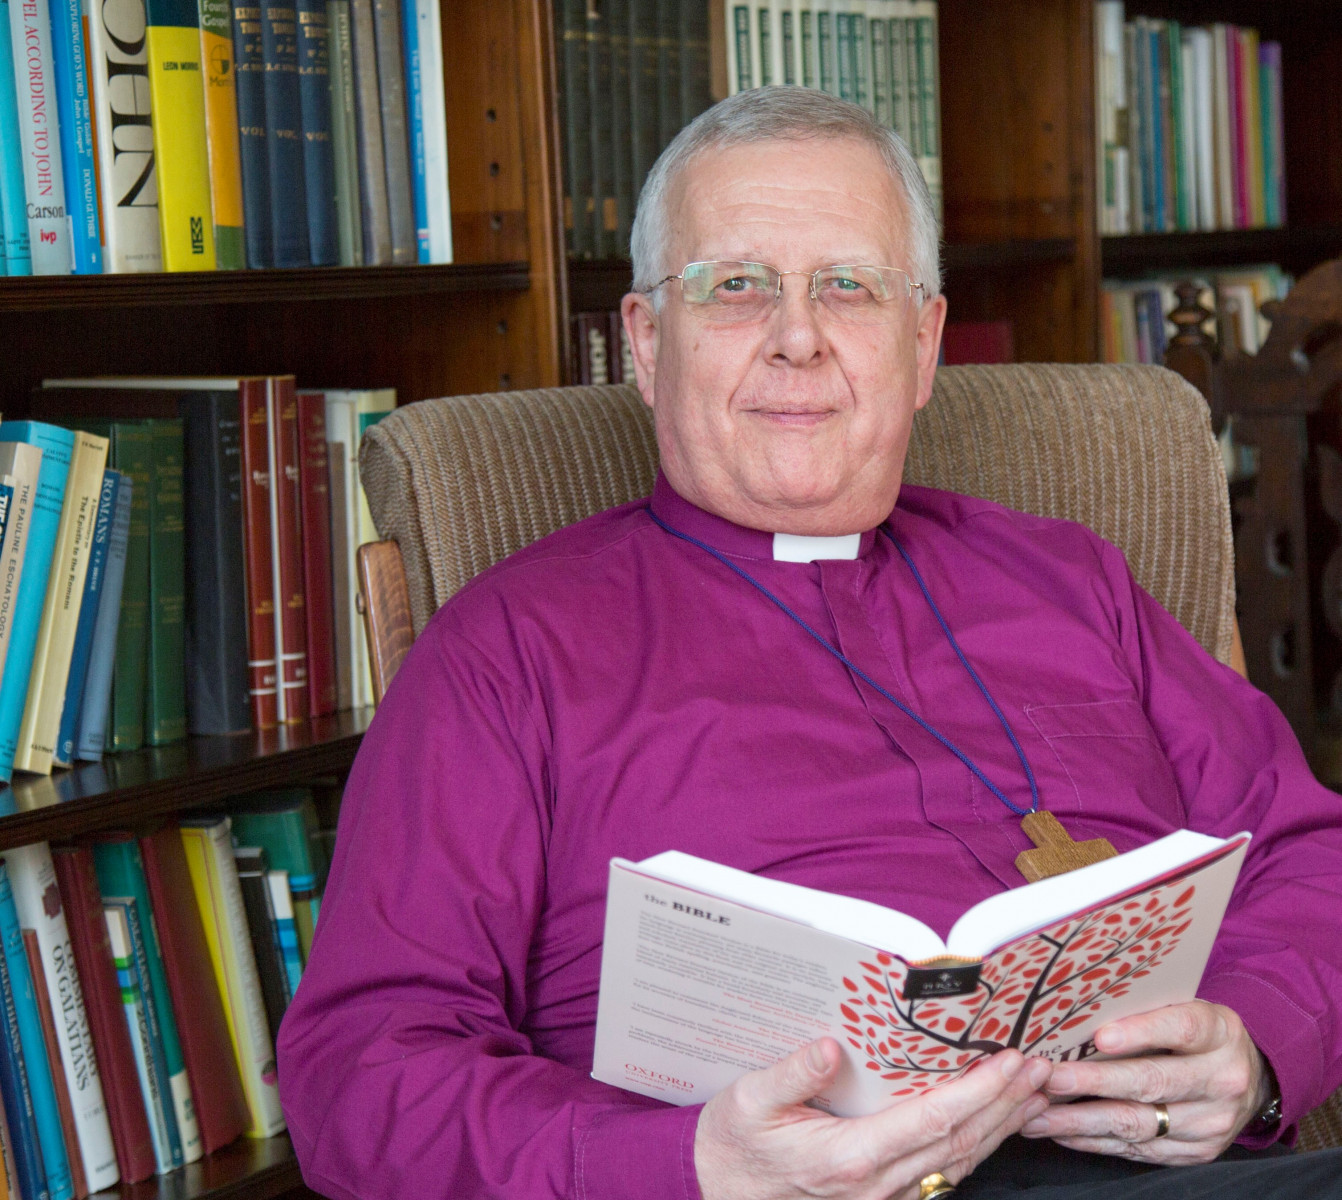 Bishop Donald reading